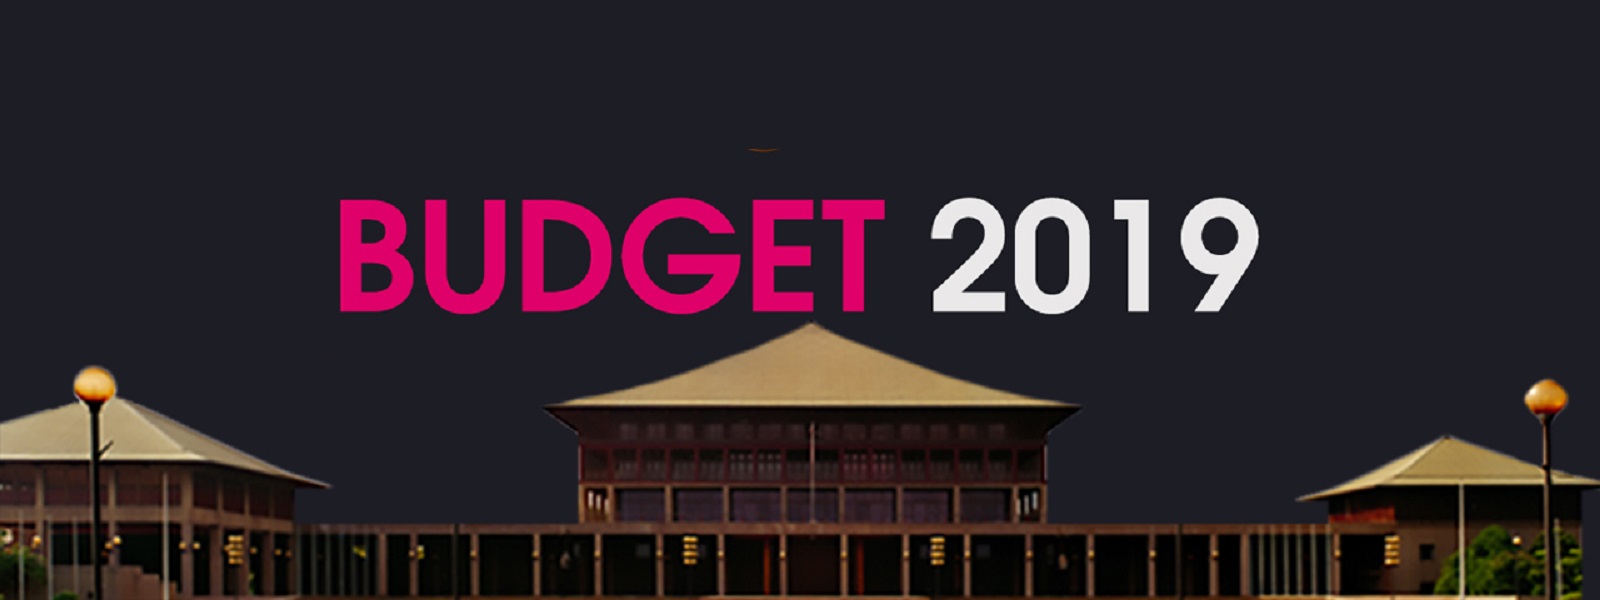 Budget 2019 - Live Blog